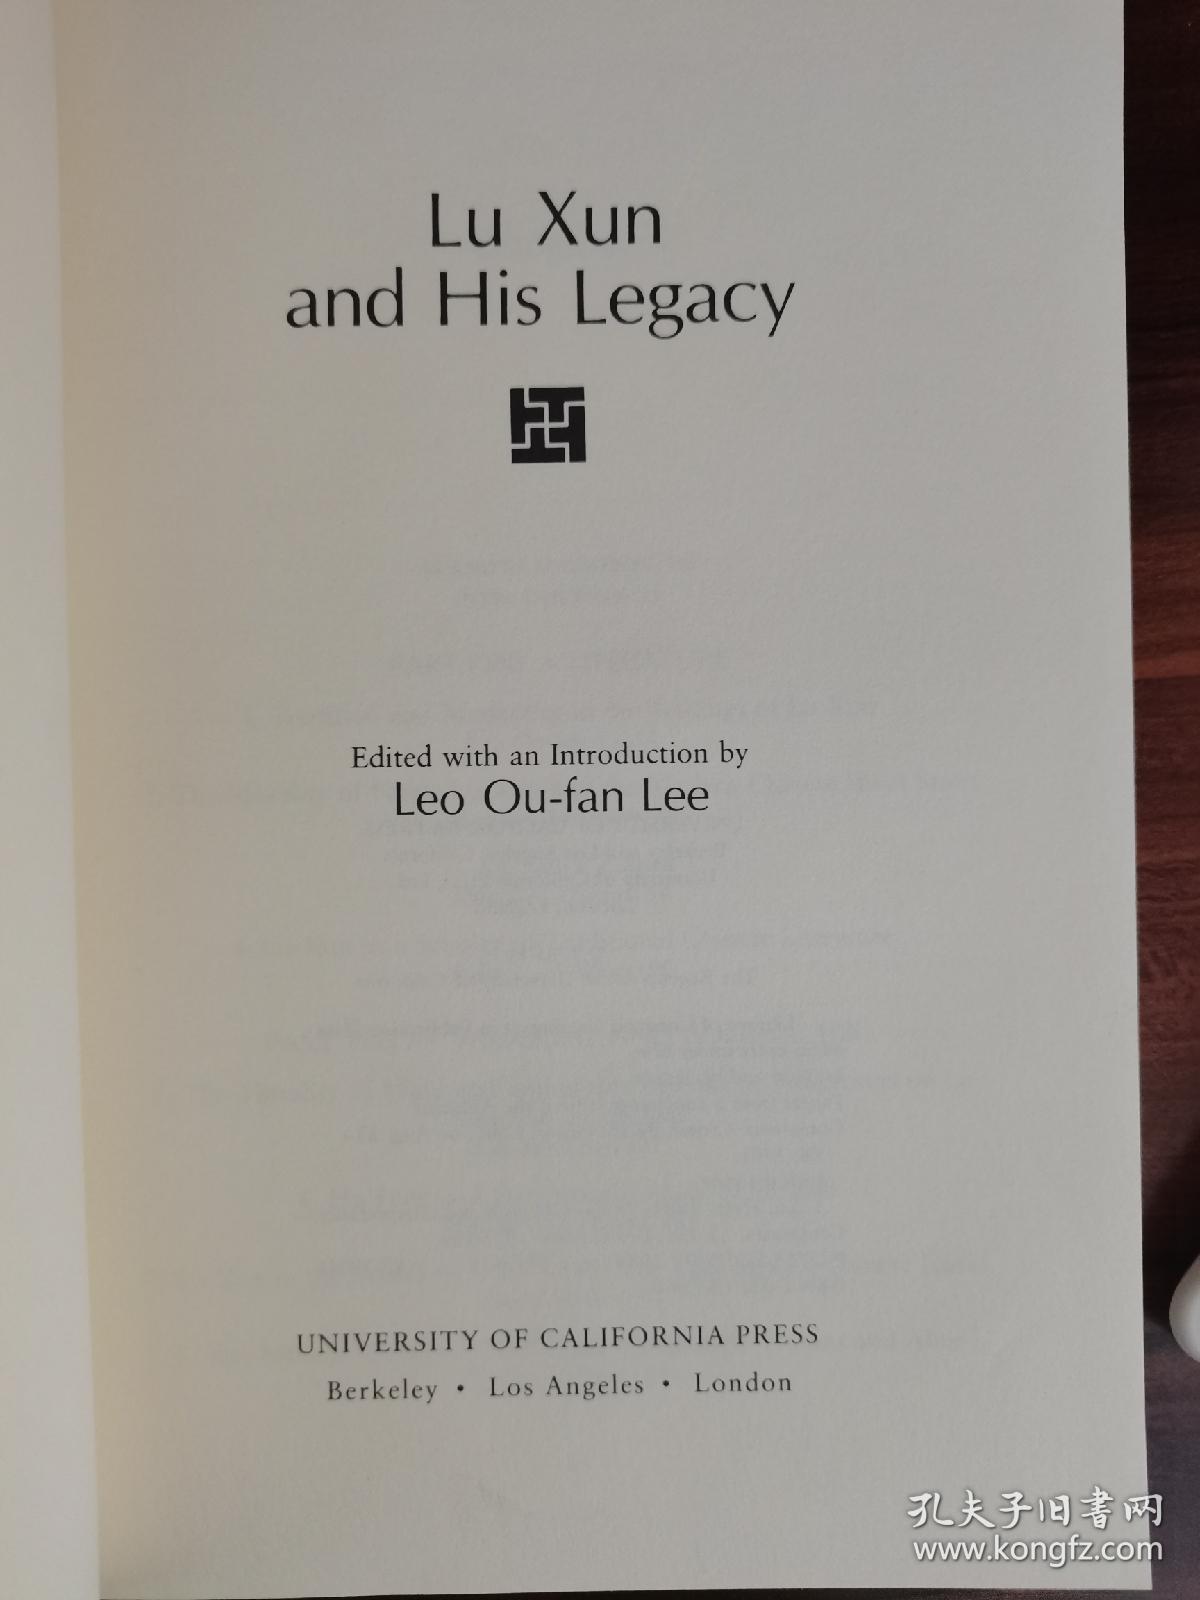 1985年一版《Lu Xun and His Legacy》